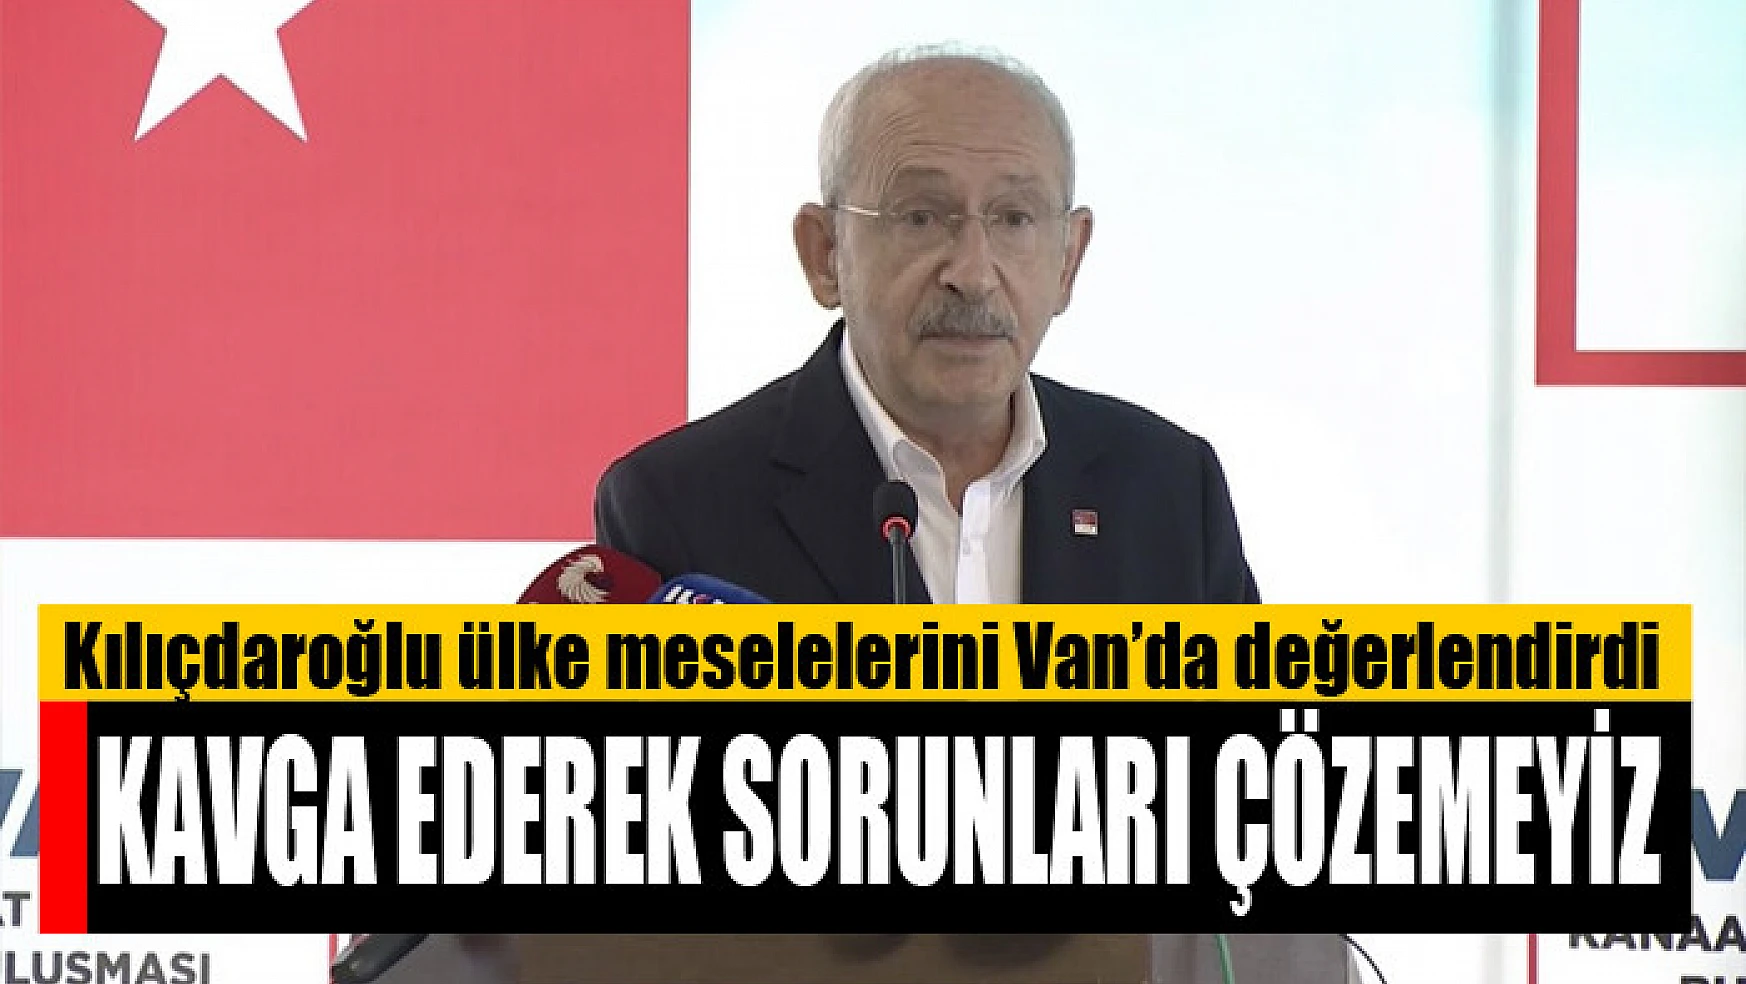 Kılıçdaroğlu Van'da konuştu Kavga ederek sorunları çözemeyiz